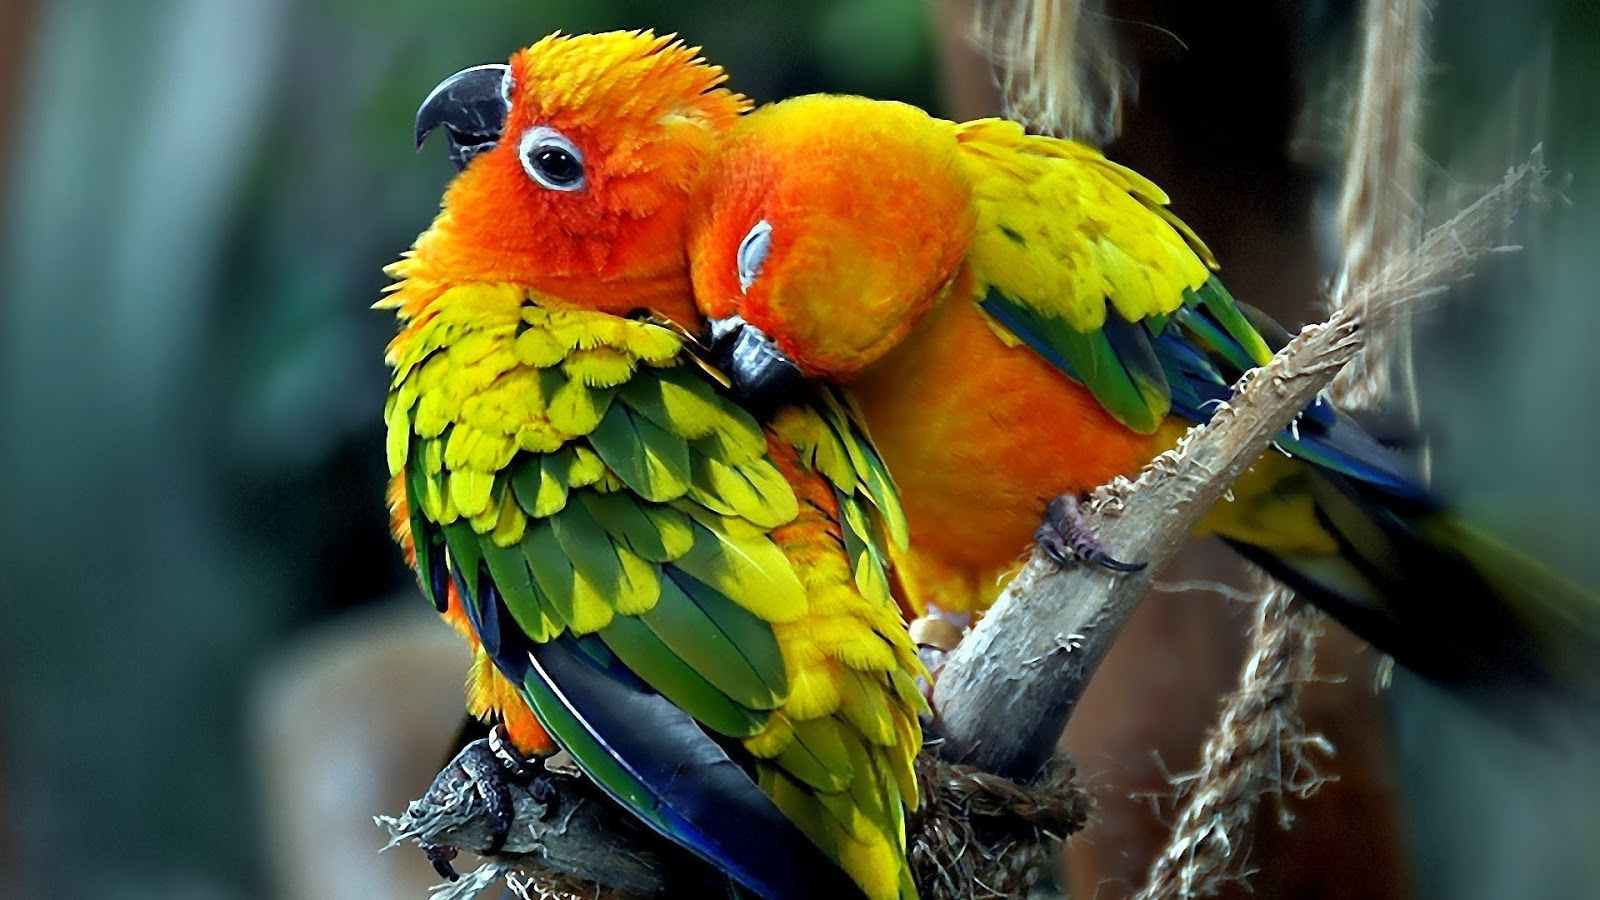 bellissimo download di sfondi hd,uccello,pappagallo,pappagallino verde africano,parrocchetto,ara